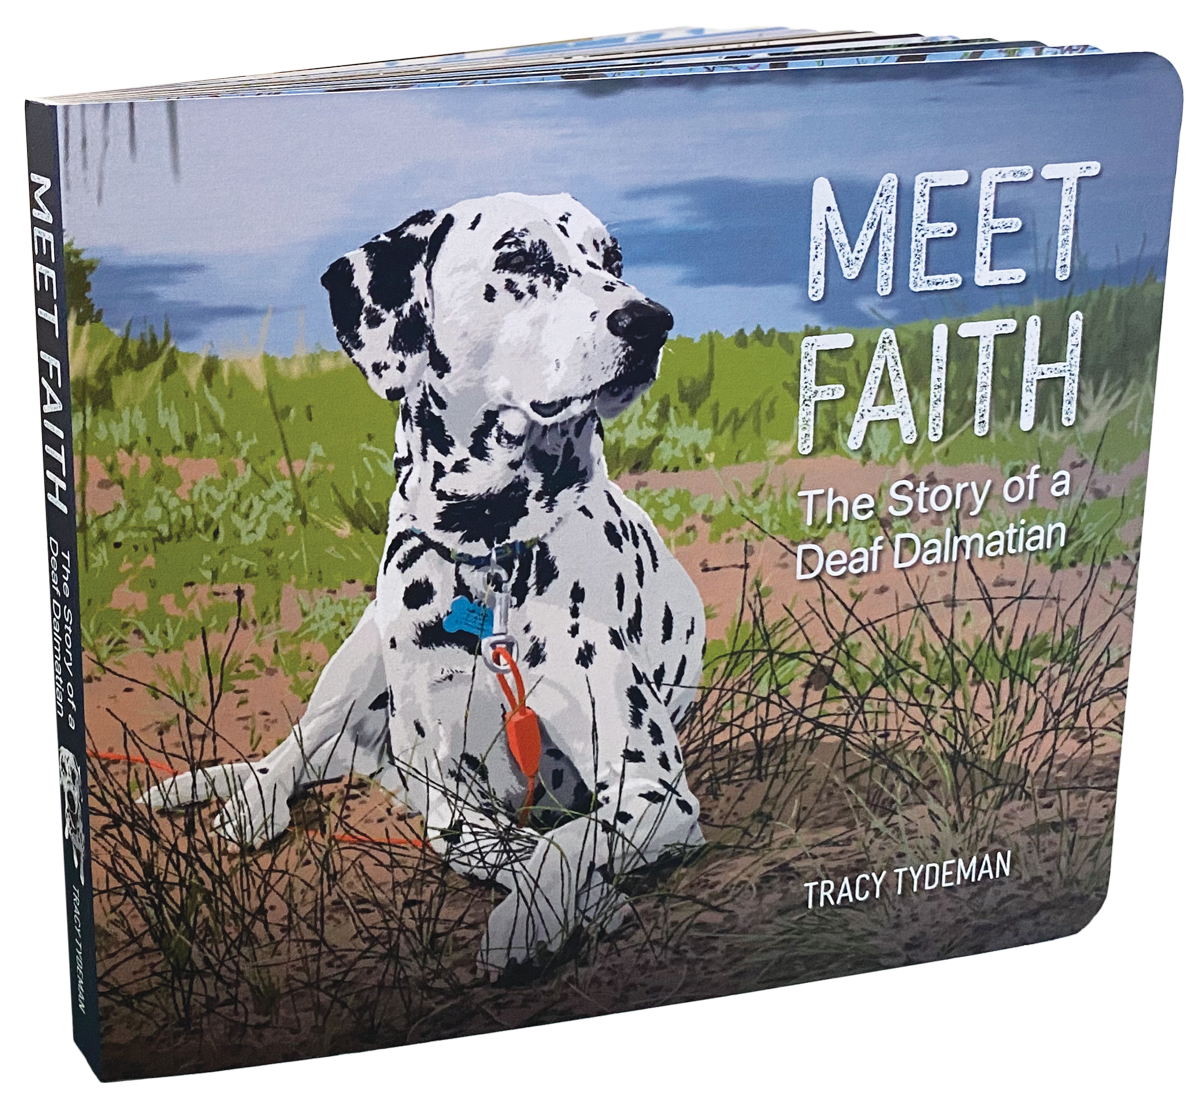 Meet Faith - The Story of a Deaf Dalmatian